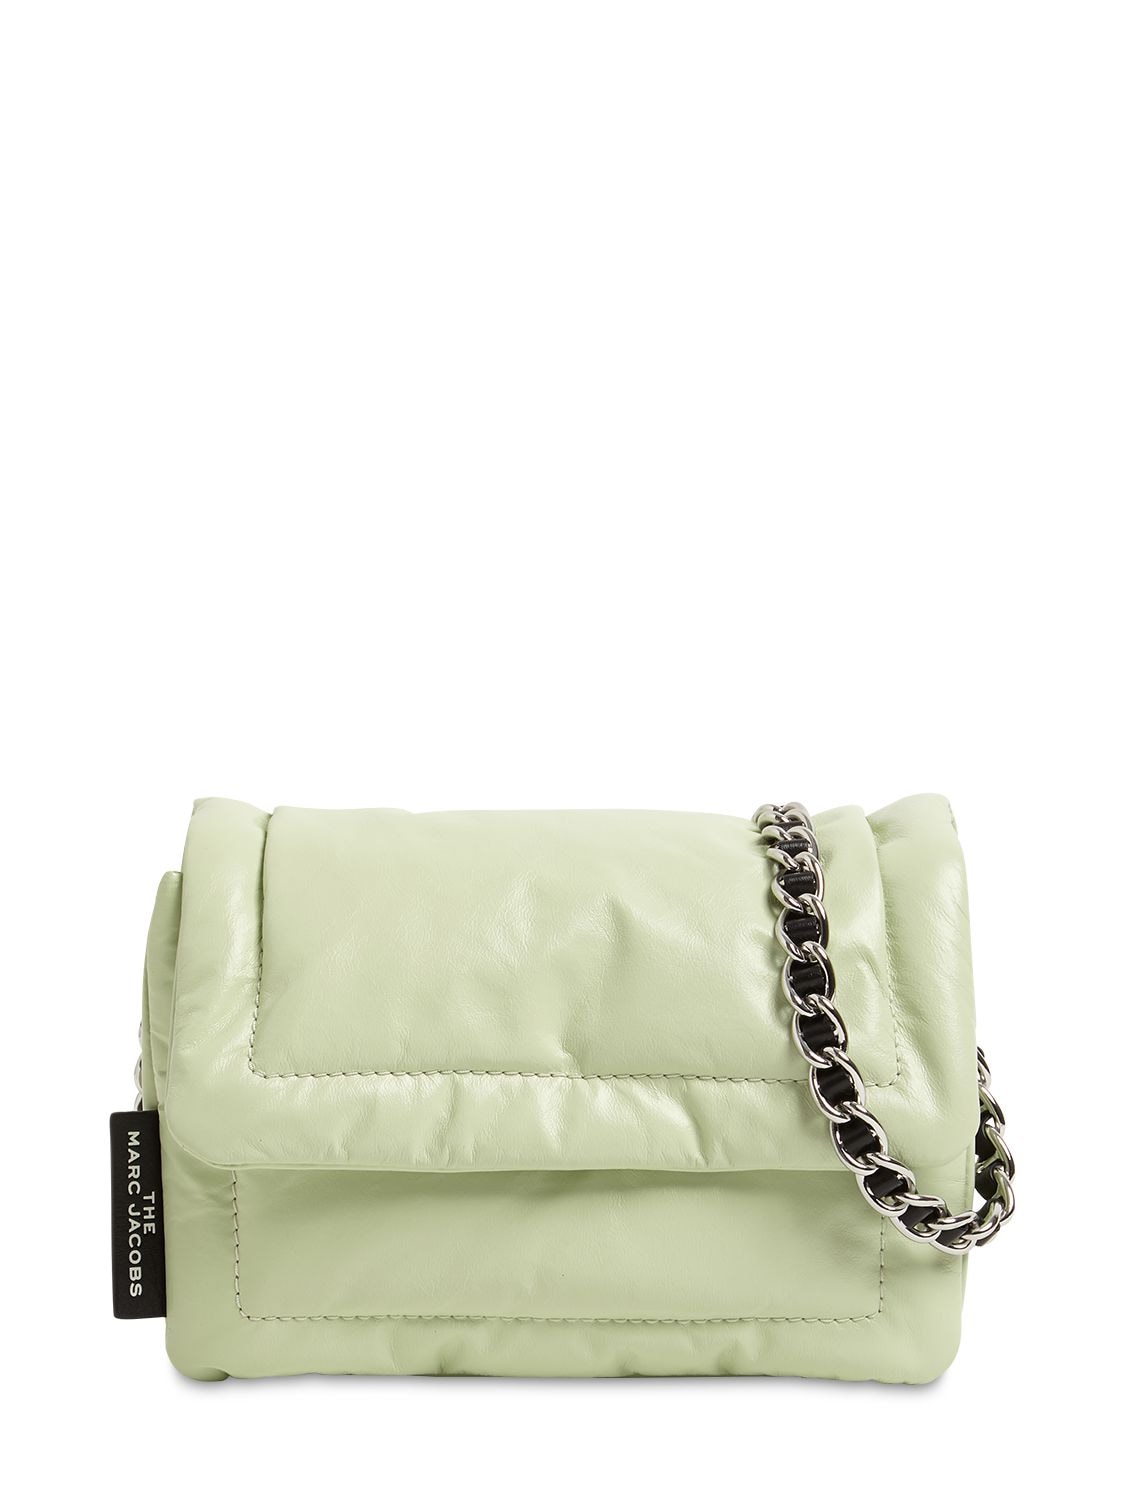 Pistachio Mini Pillow Bag by Marc Jacobs Handbags for $20